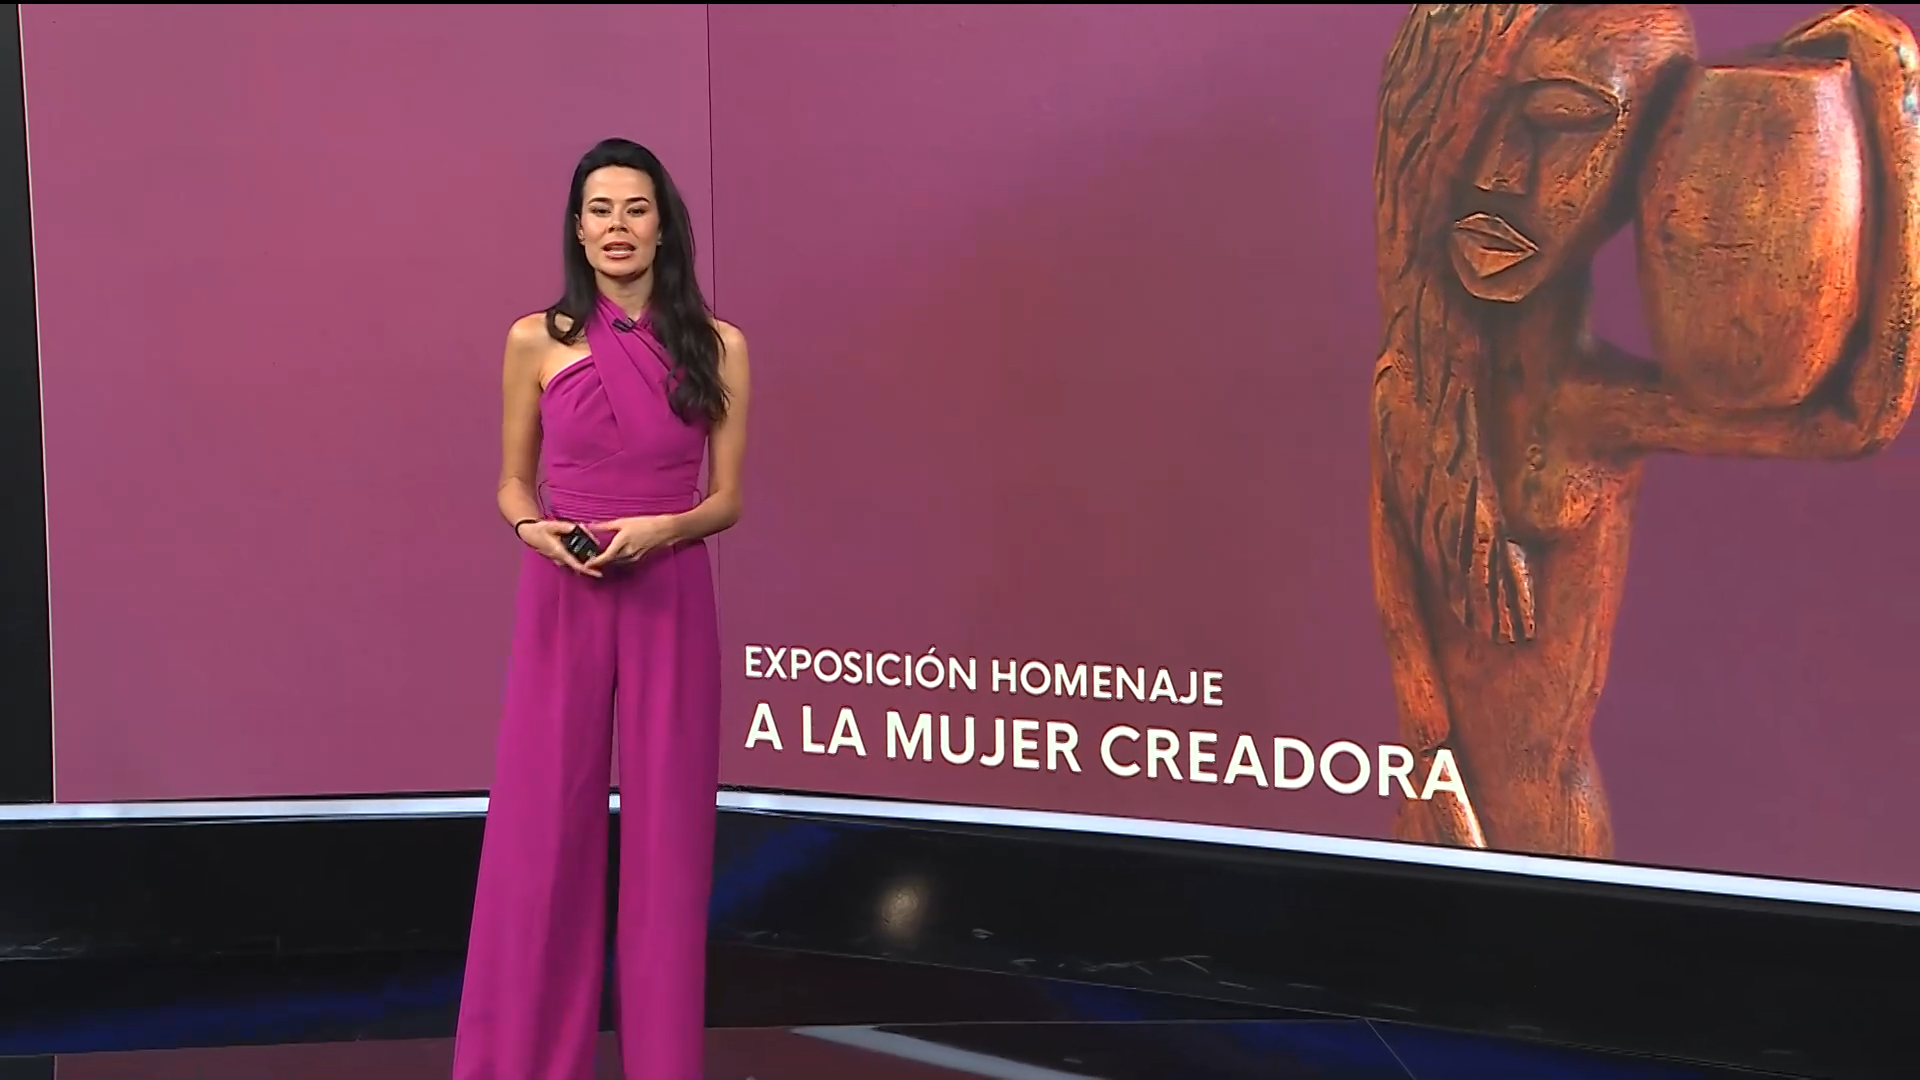 Captura de vídeo de la emisión de un programa: una presentadora, de pie, frente a una pantalla con una escultura.